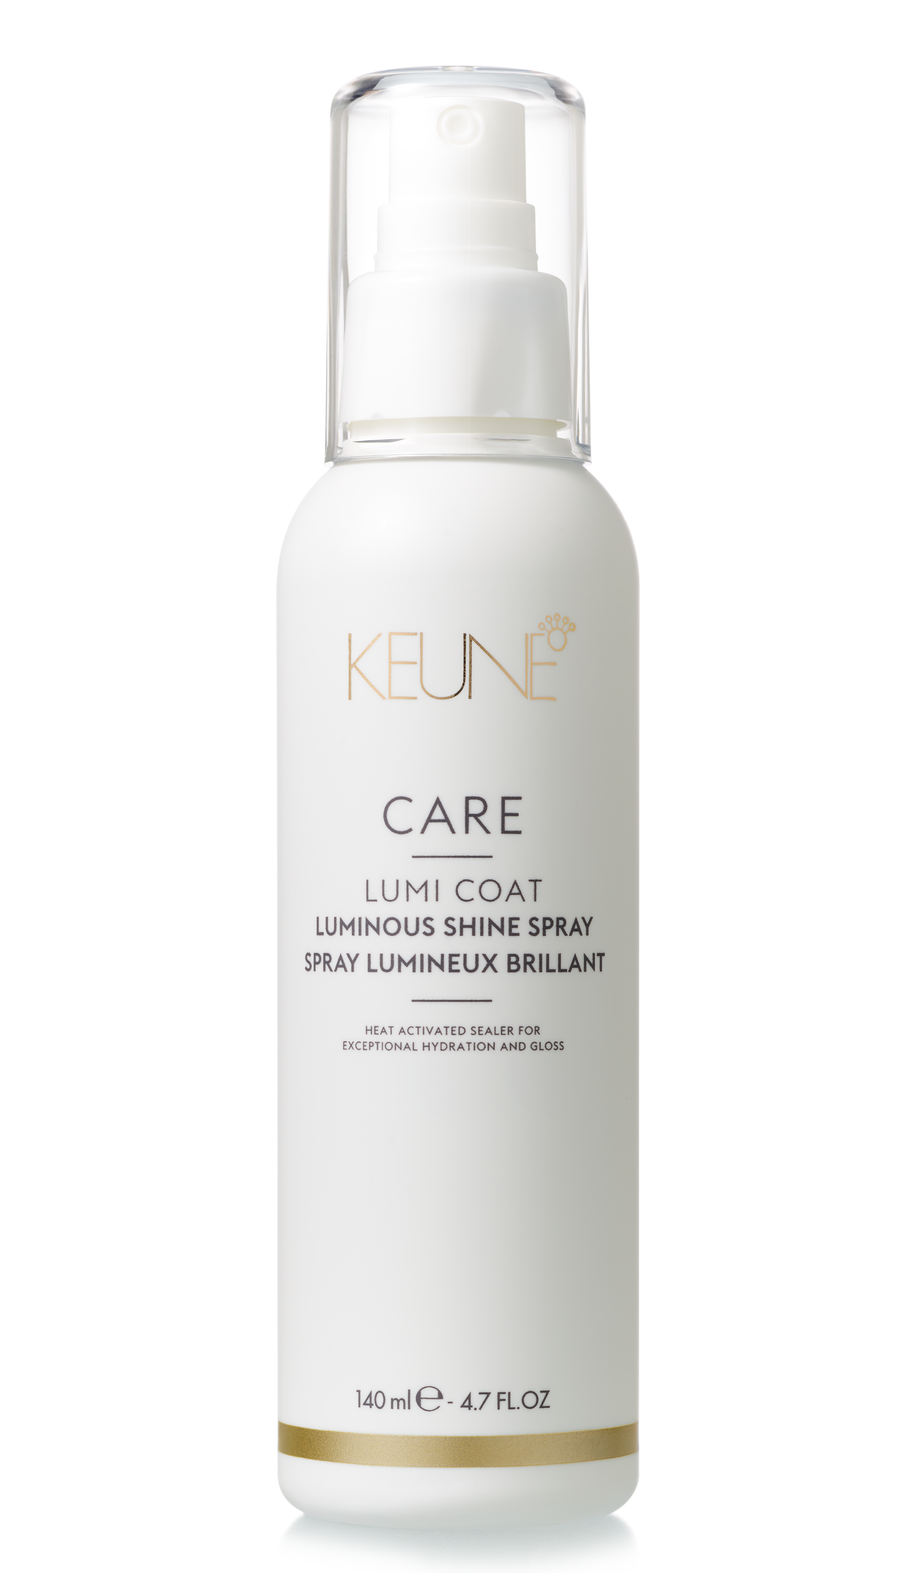 Entdecke das Care Lumi Coat Spray auf keune.ch und verleihe deinem Haar seidigen Glanz sowie eine leichte Feuchtigkeitspflege. Dieses Produkt bietet außerdem effektiven Hitzeschutz Haare.